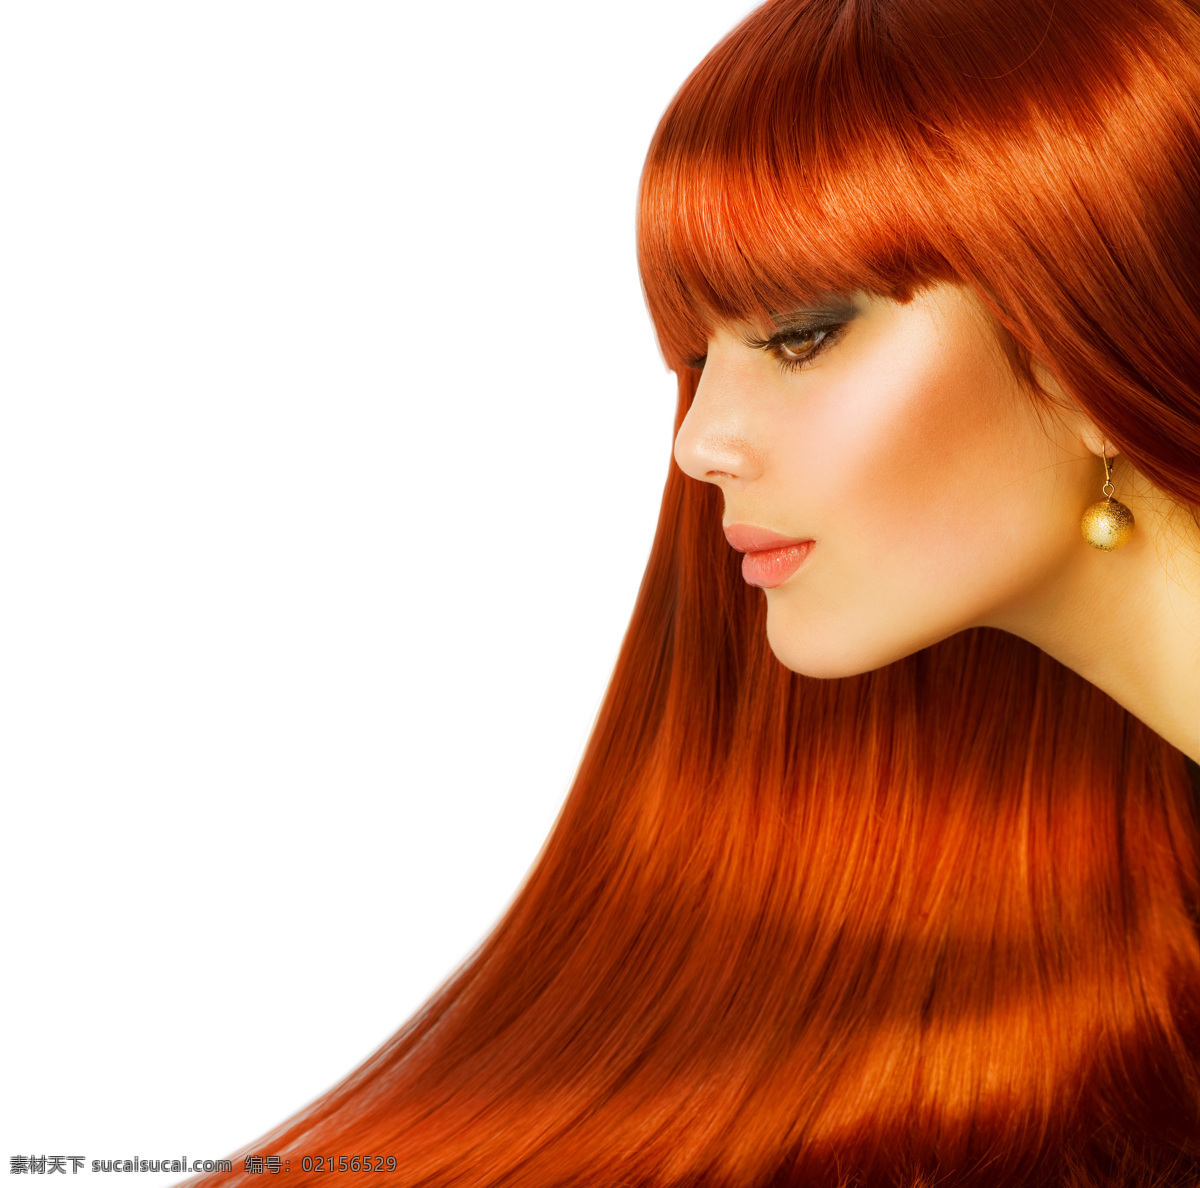 红头 发 女人 外国女人 秀发 长发 直发 模特 红色头发 美女图片 人物图片